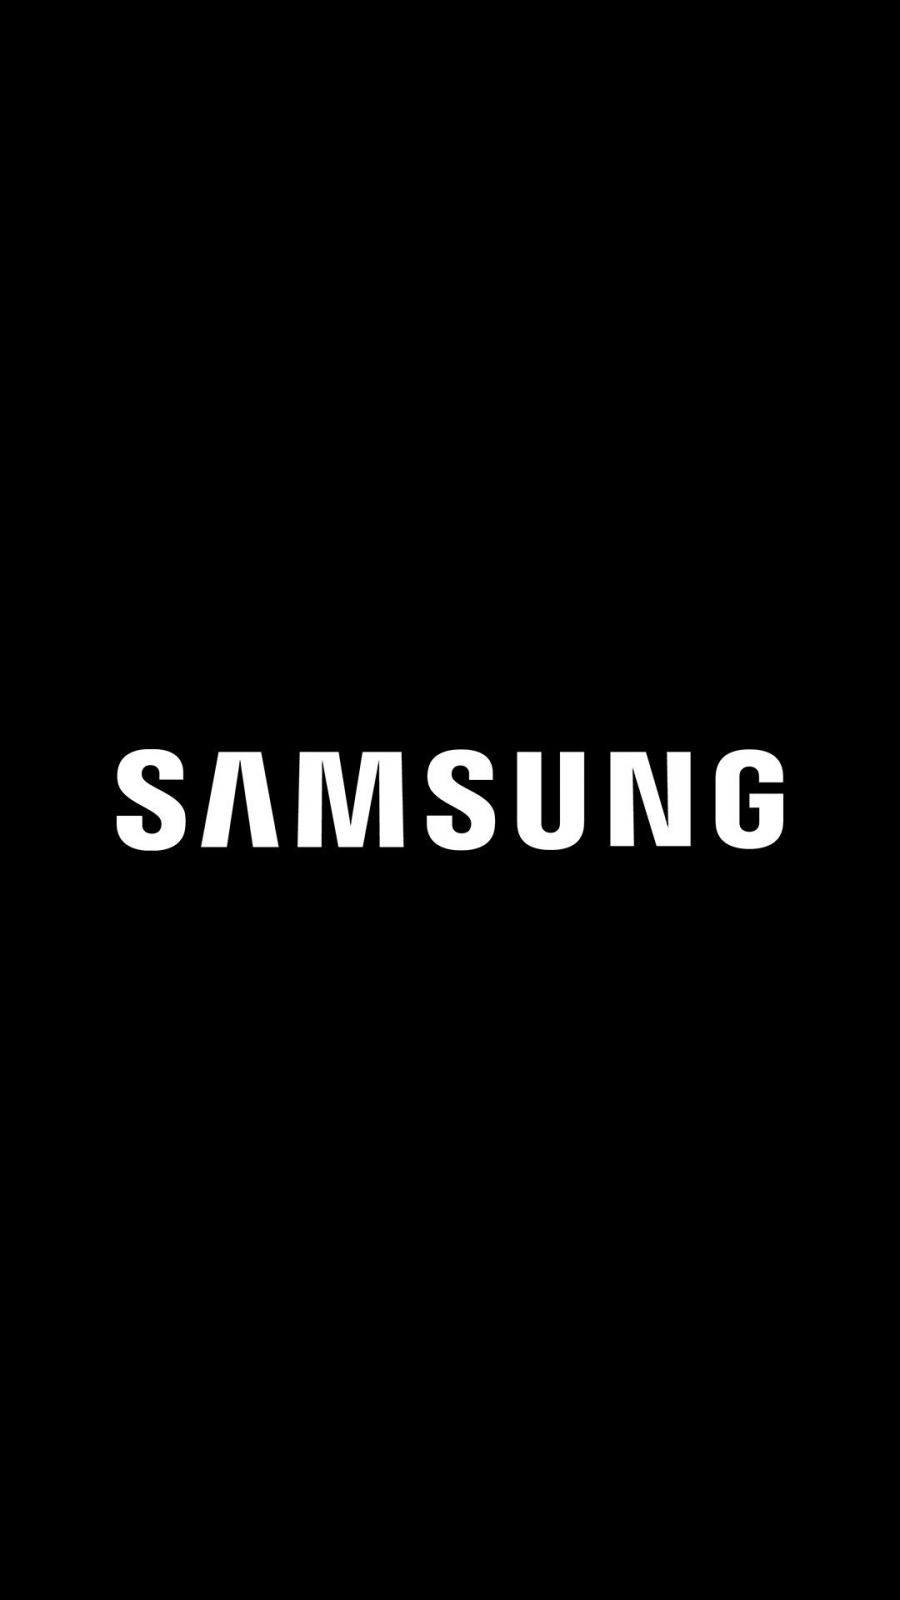 Η Samsung και η Virgin Media συμπράττουν για τη διεύρυνση της κάλυψης 4G και 5G δικτύου